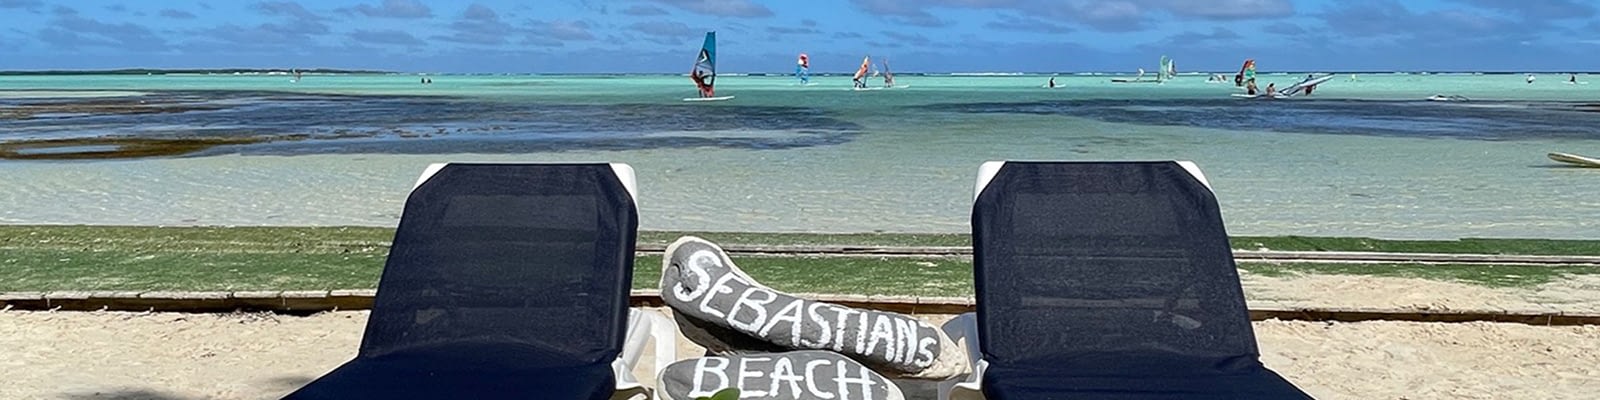 sebastians-beach-bar-restaurant-bonaire-slider-1